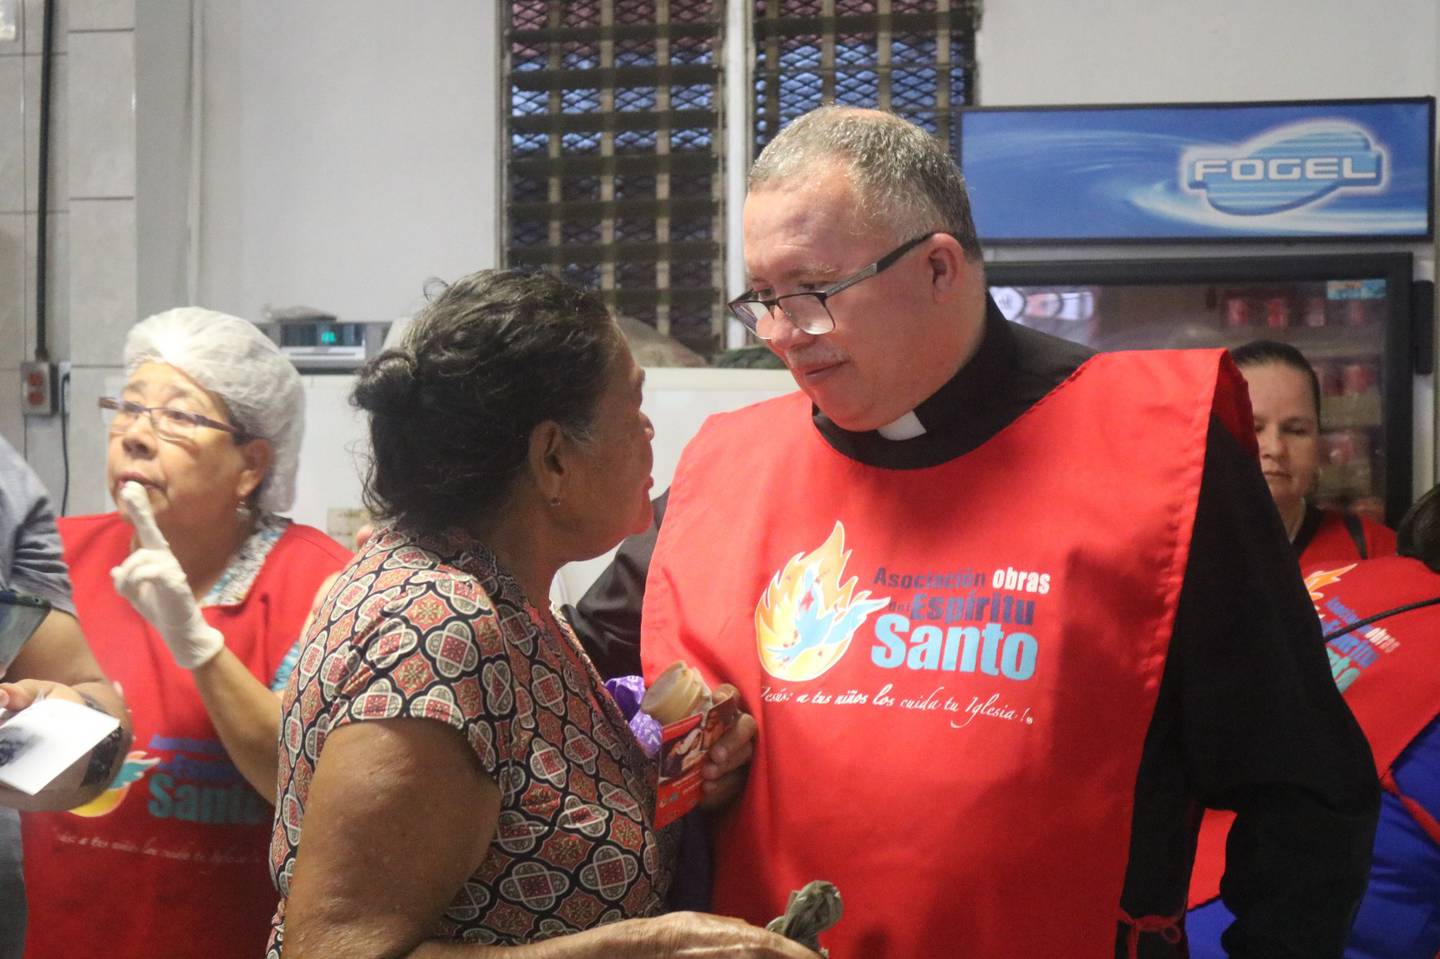 El padre Sergio Valverde Espinoza, presidente y director de la Asociación Obras del Espíritu Santo, abrió una sucursal del comedor de la Asociación en La Carpio y así comenzó a llenar más de mil pancitas de niños, jóvenes, adultos y adultos mayores